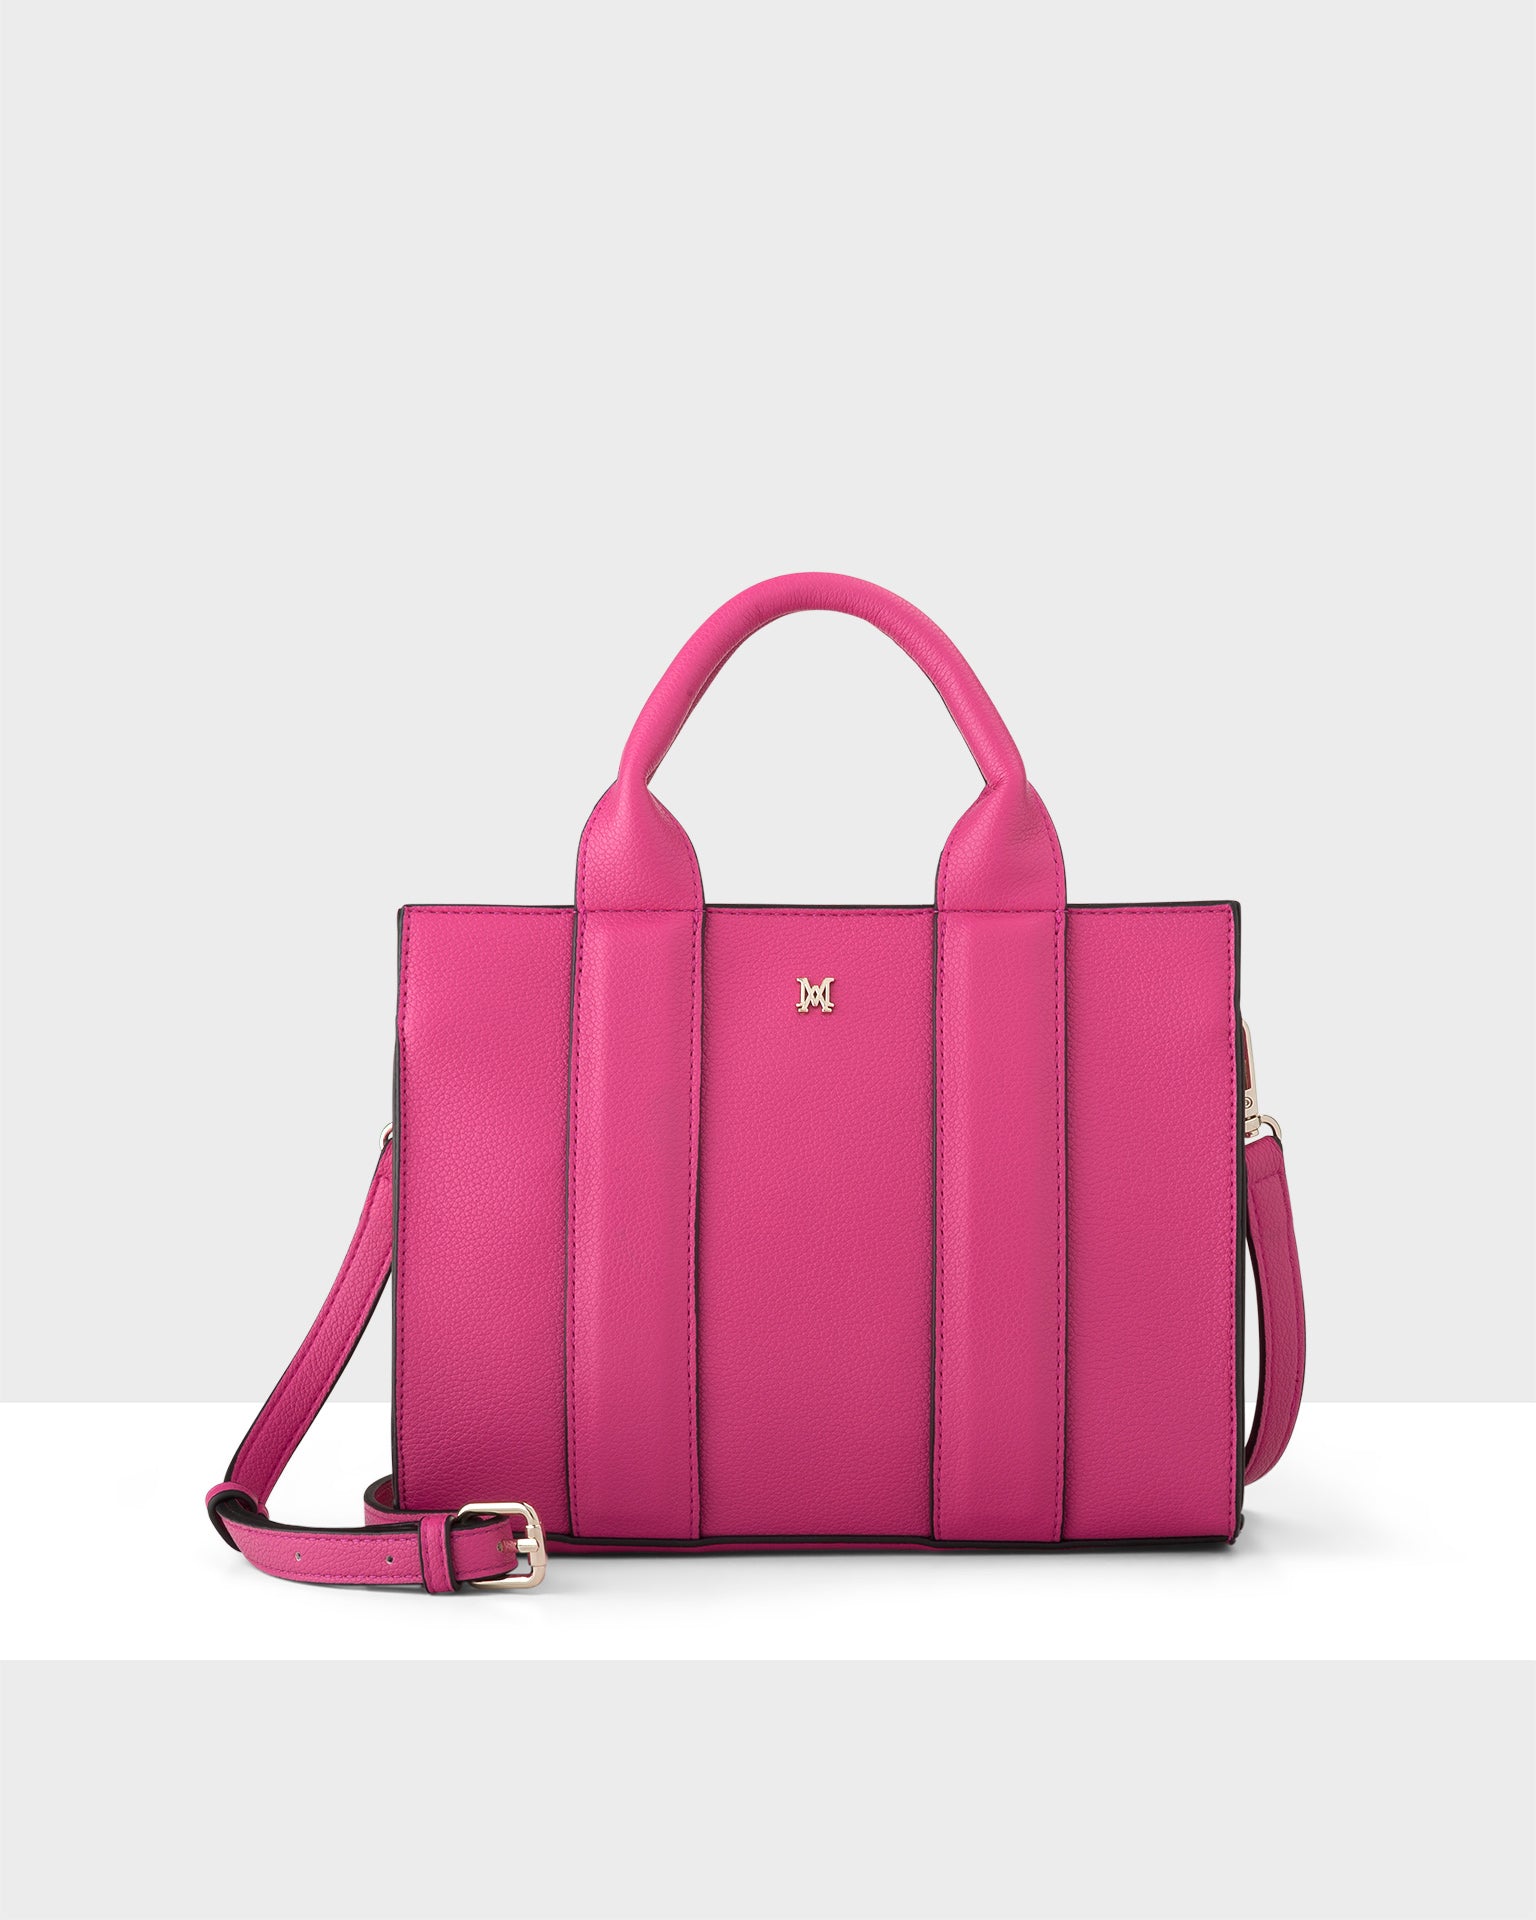 Guess NELL CONVERTIBLE XBODY FLAP - Handbag - fuchsia/pink - Zalando.de